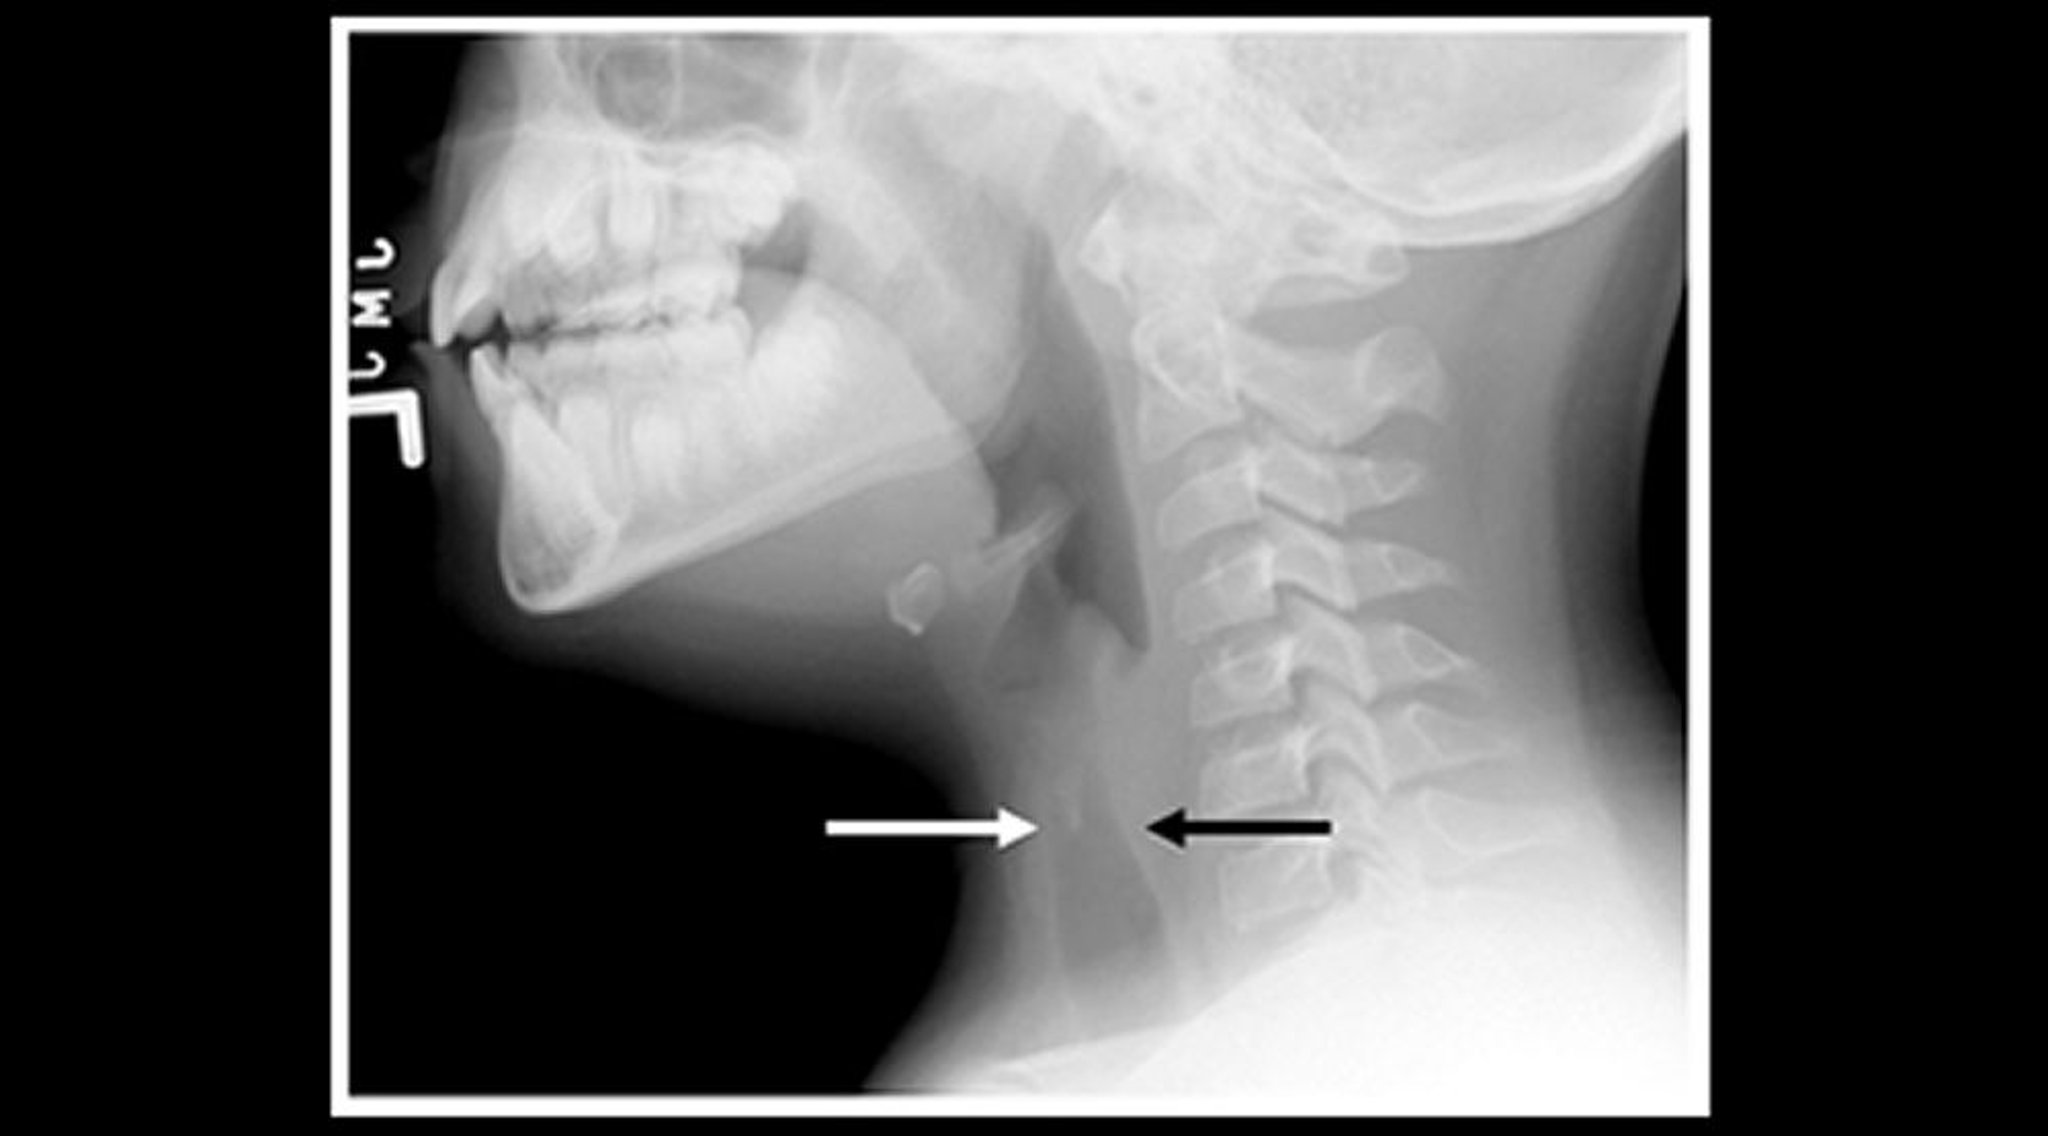 Radiographie d'un enfant atteint de laryngite striduleuse (vue sagittale)